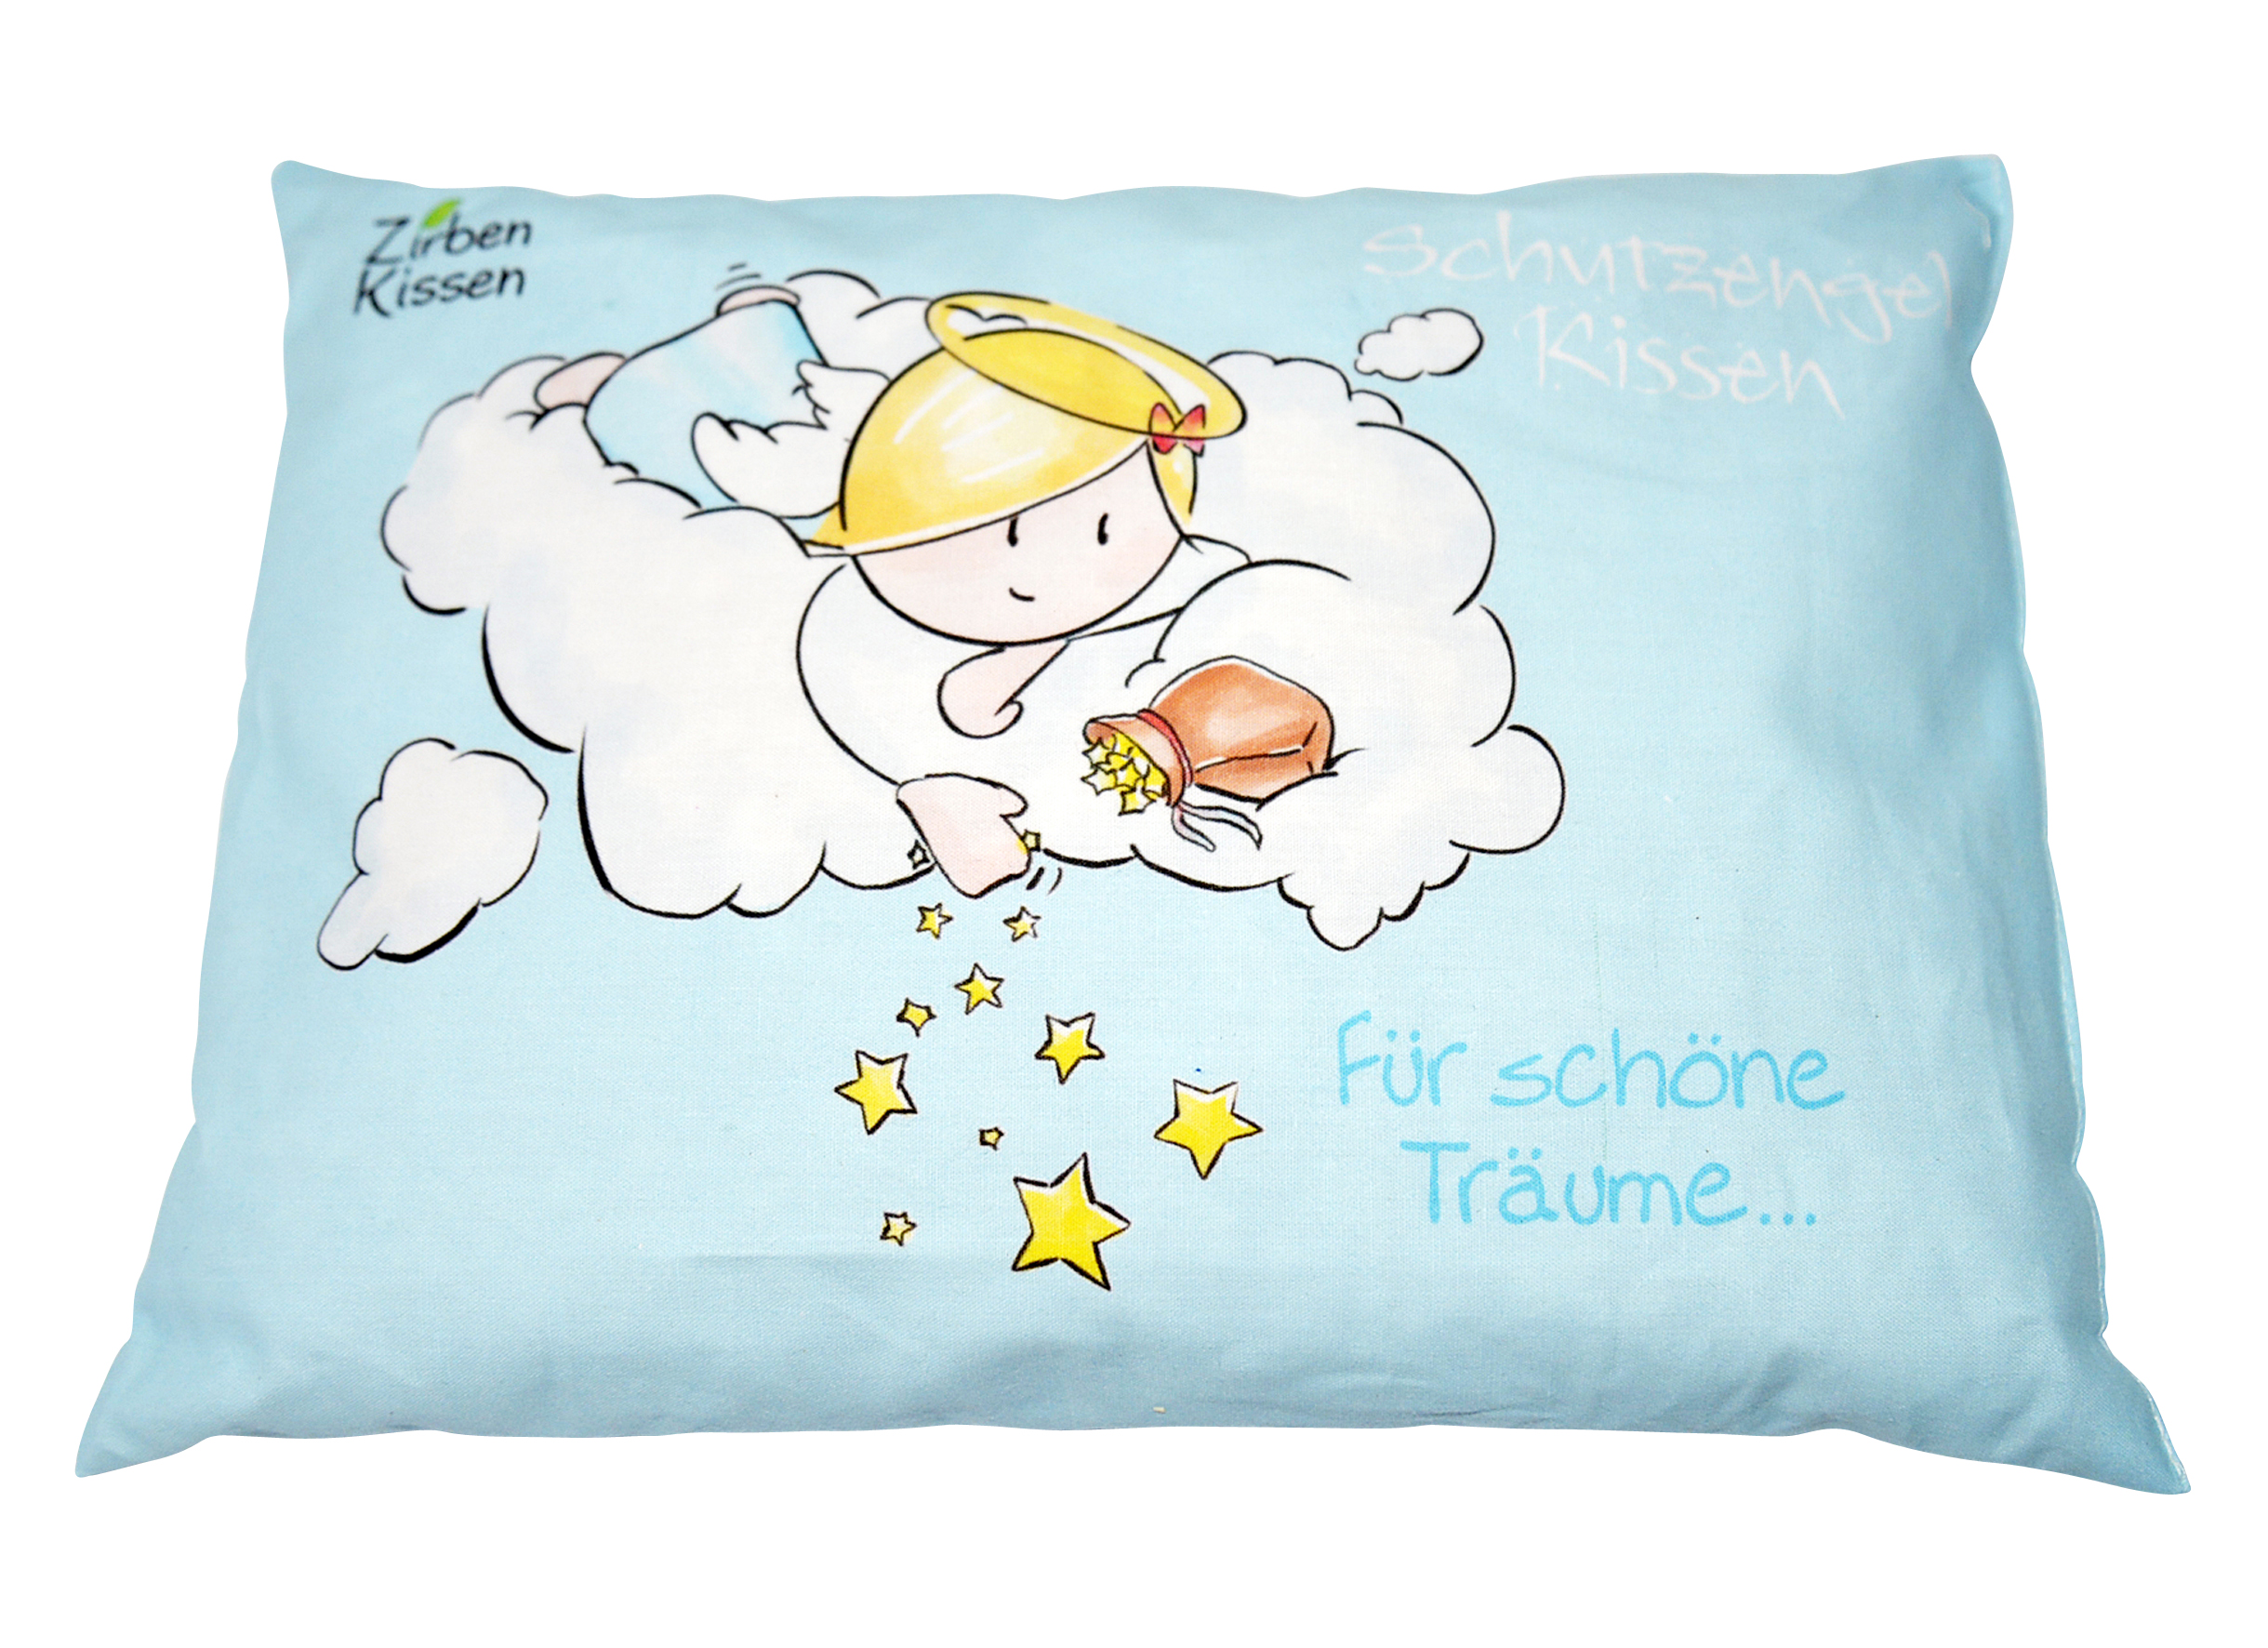 Zirben-Kissen - Für schöne Träume..